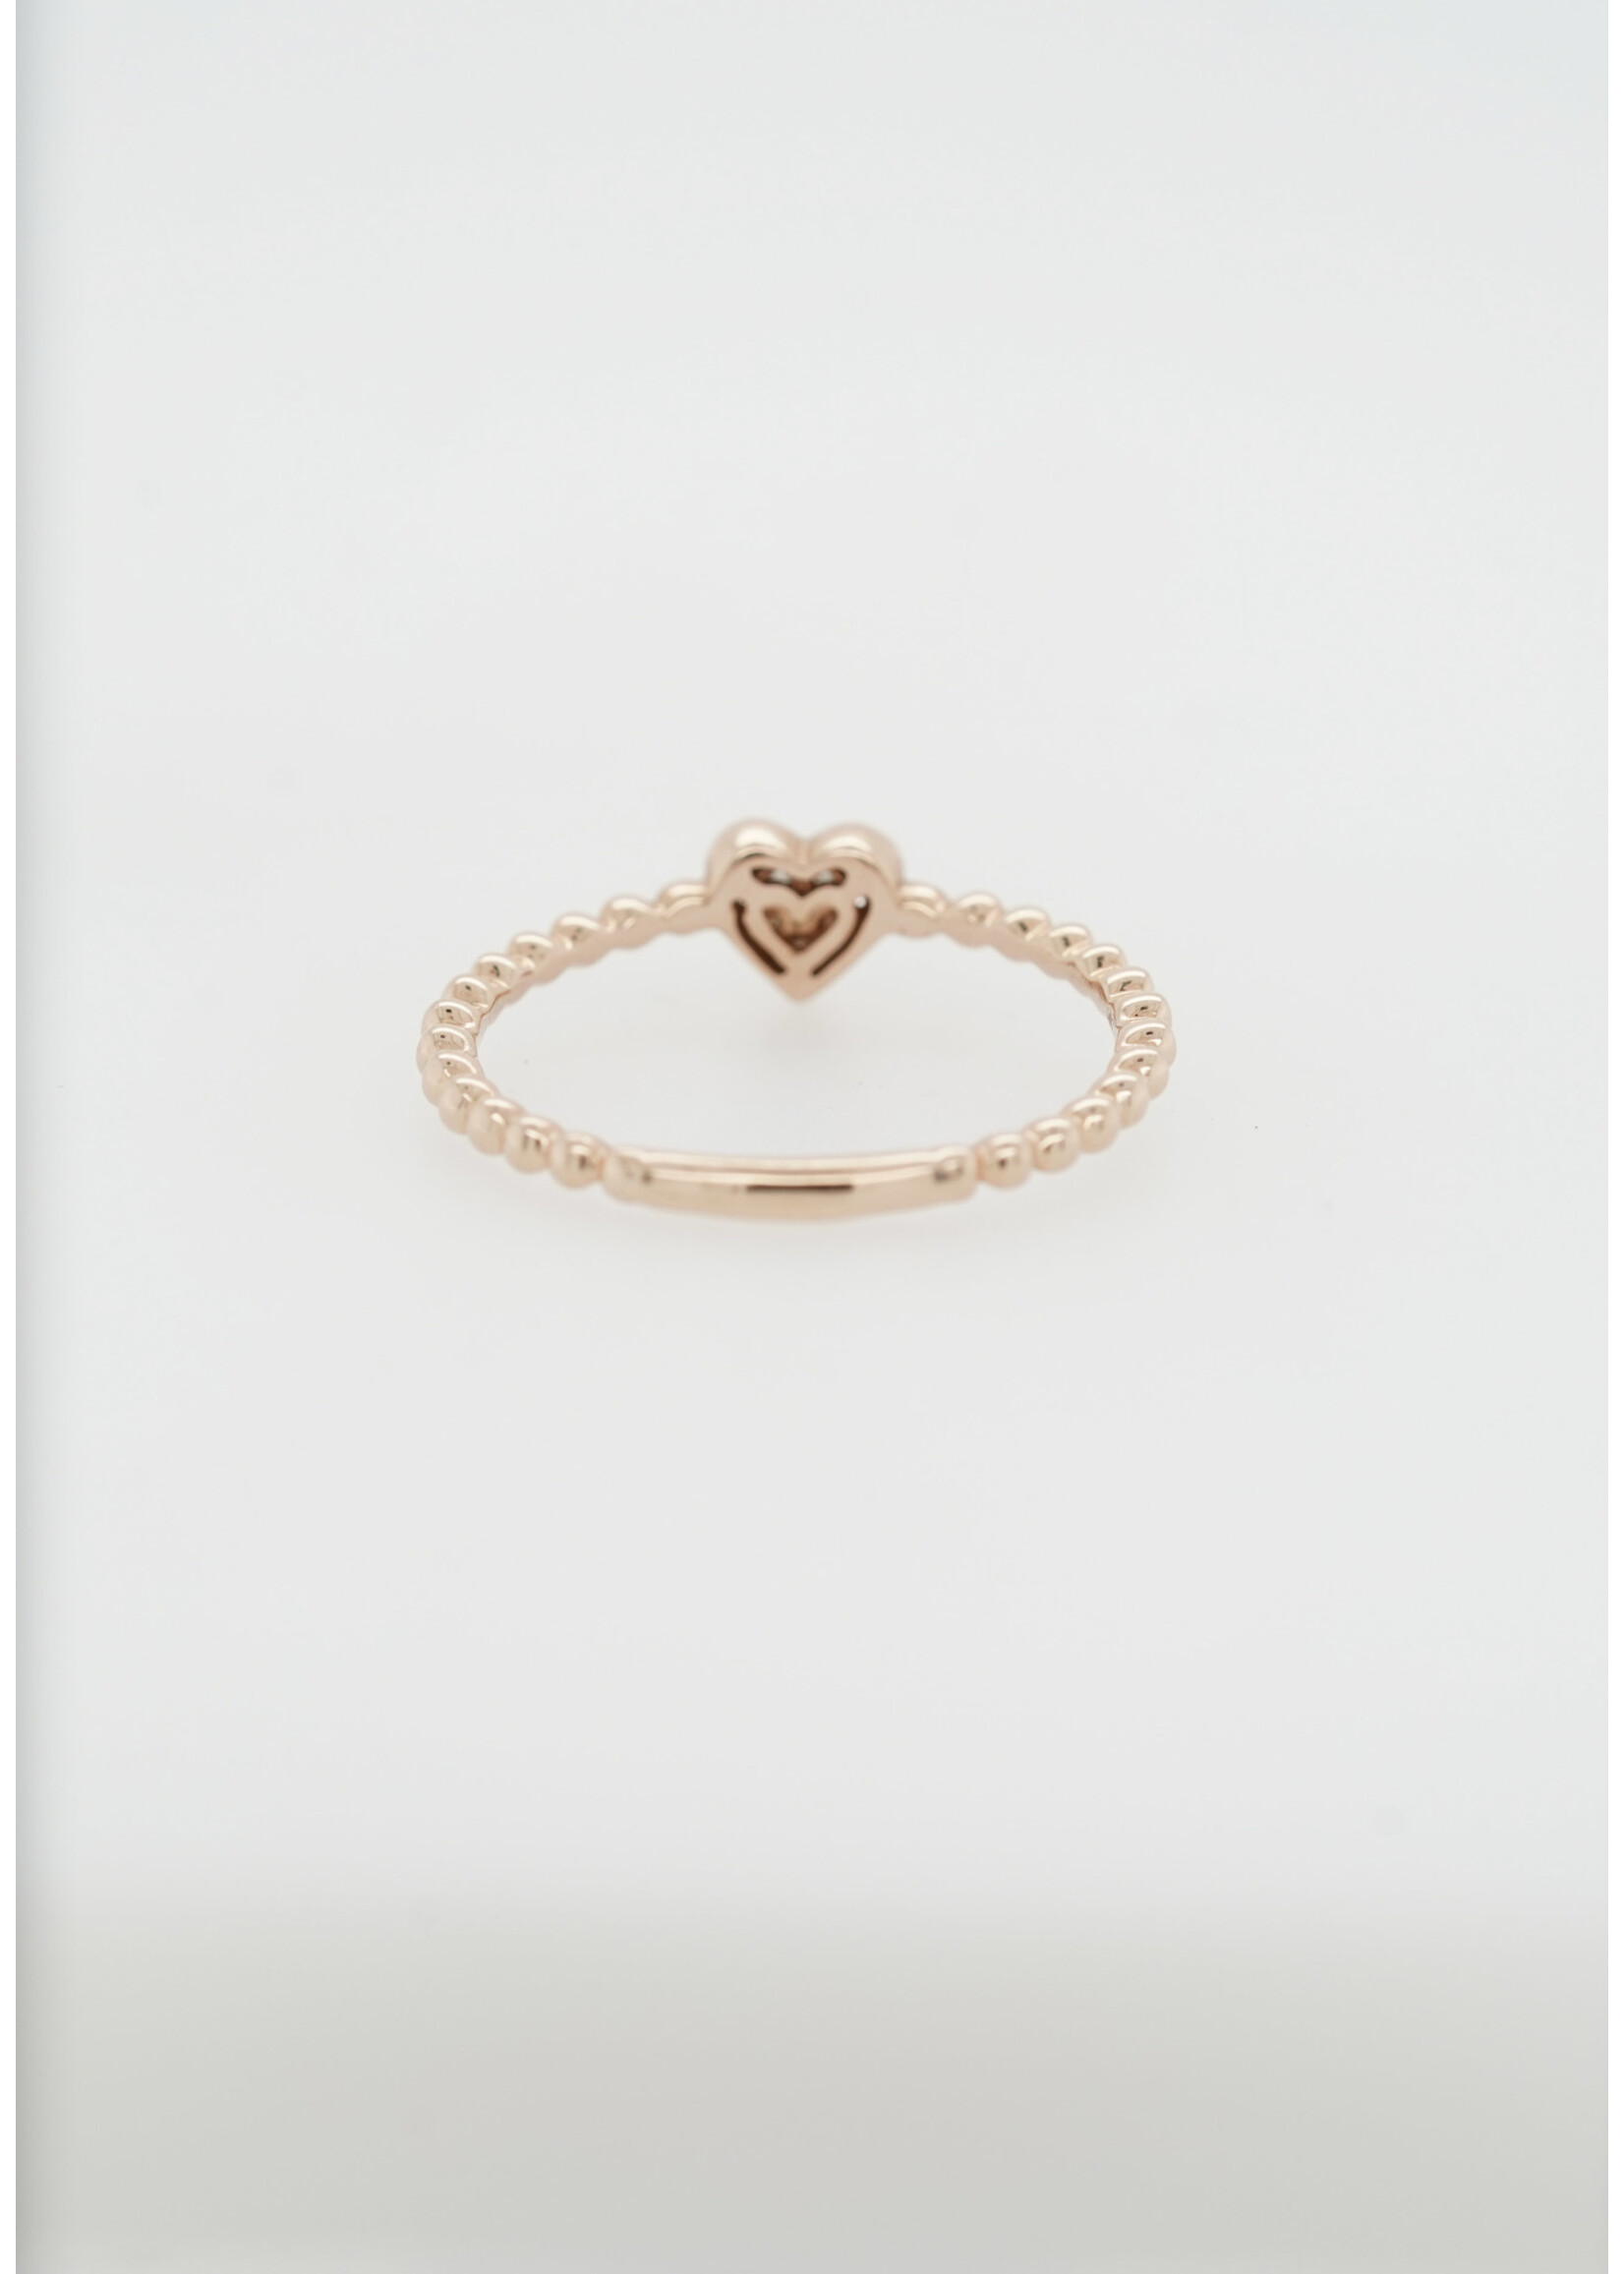 14KR 1.4g .07ctw Diamond Beaded Heart Ring (size 7)